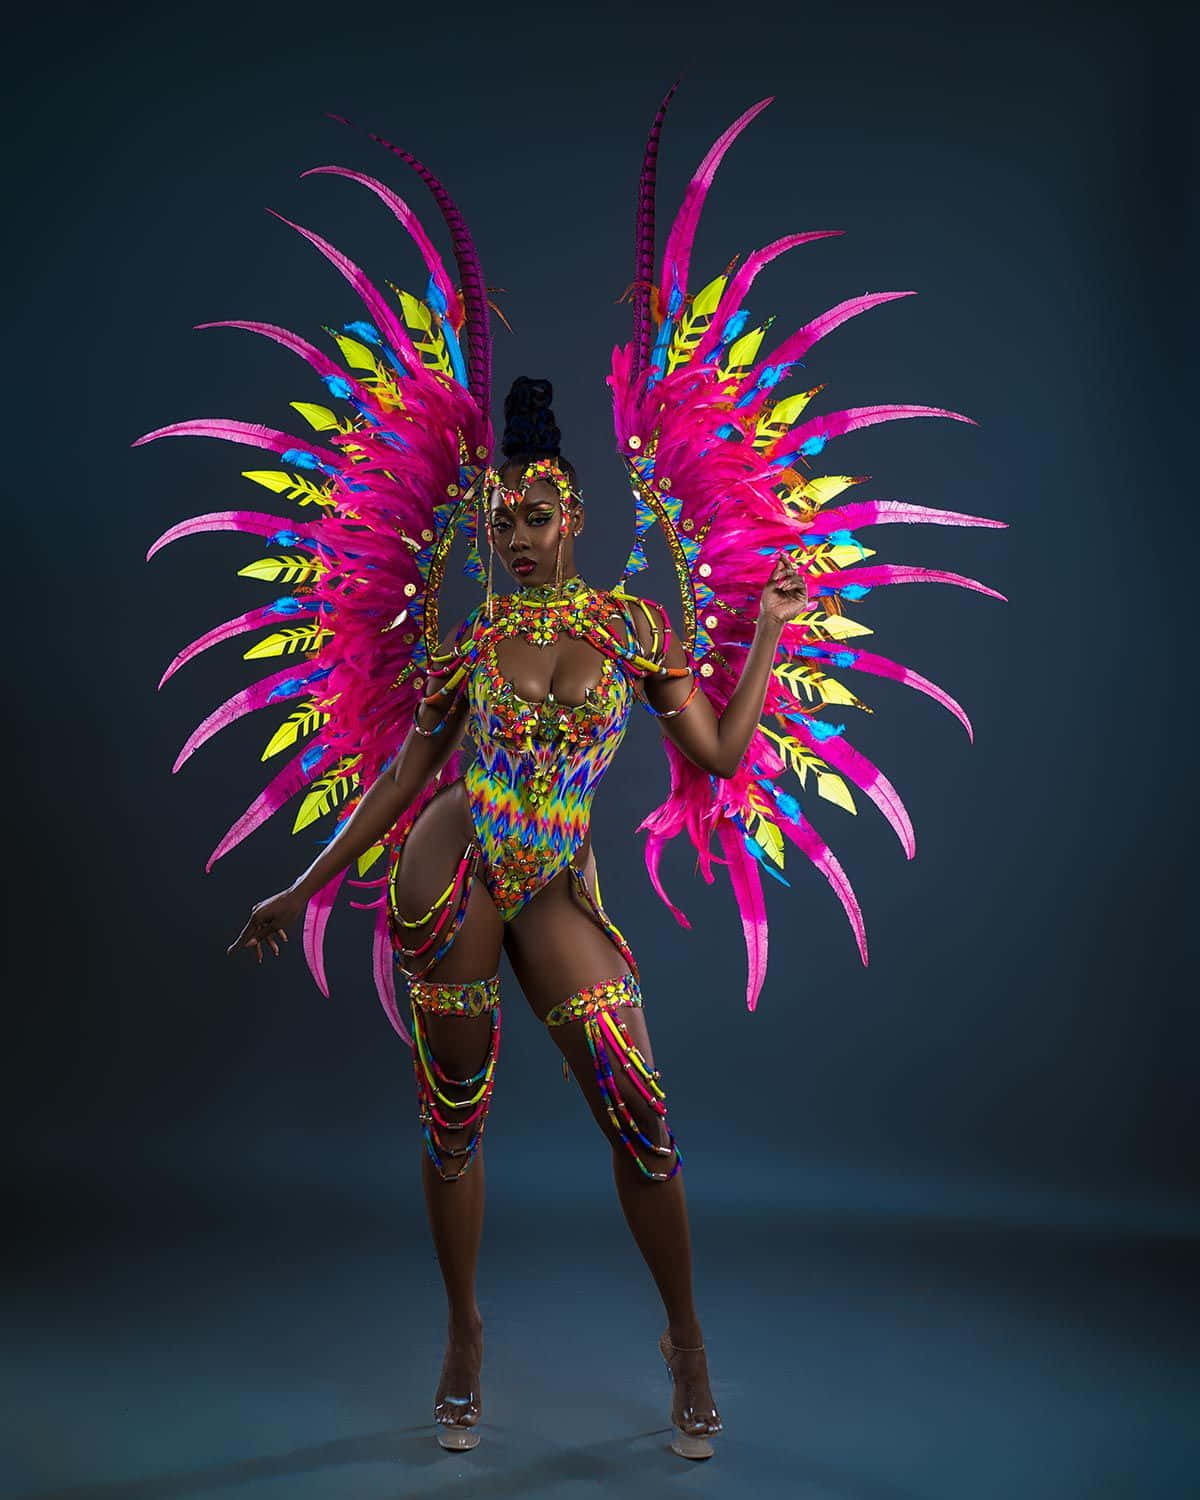 Imagende Una Mujer En Un Colorido Traje De Carnaval.